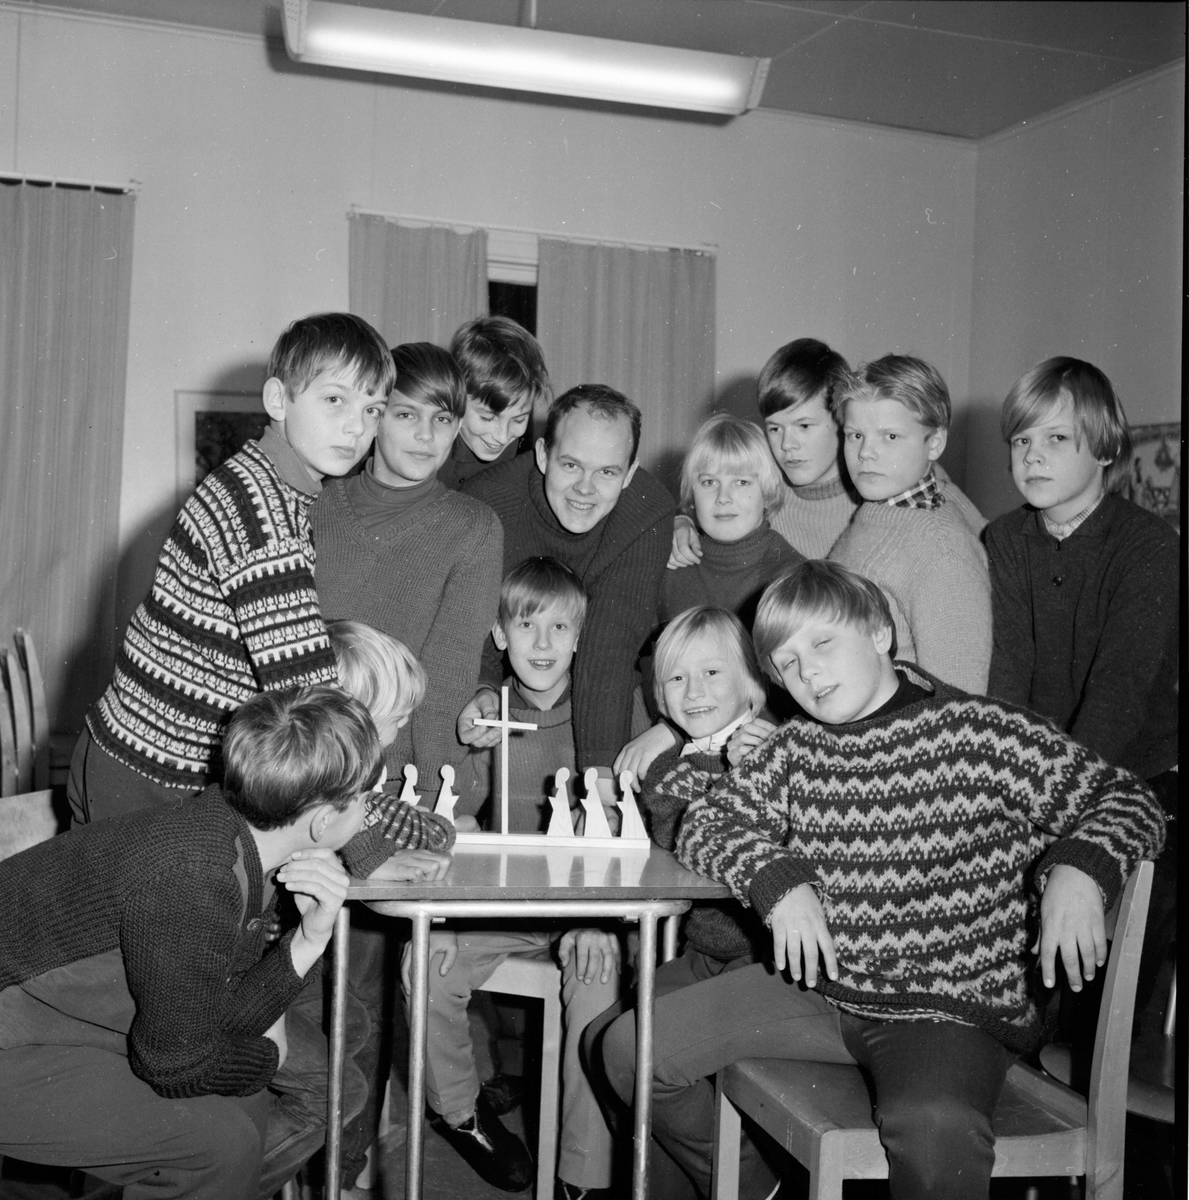 Paavola Risto ungdomskonsulent i Bollnäs församling.
9/12-1965